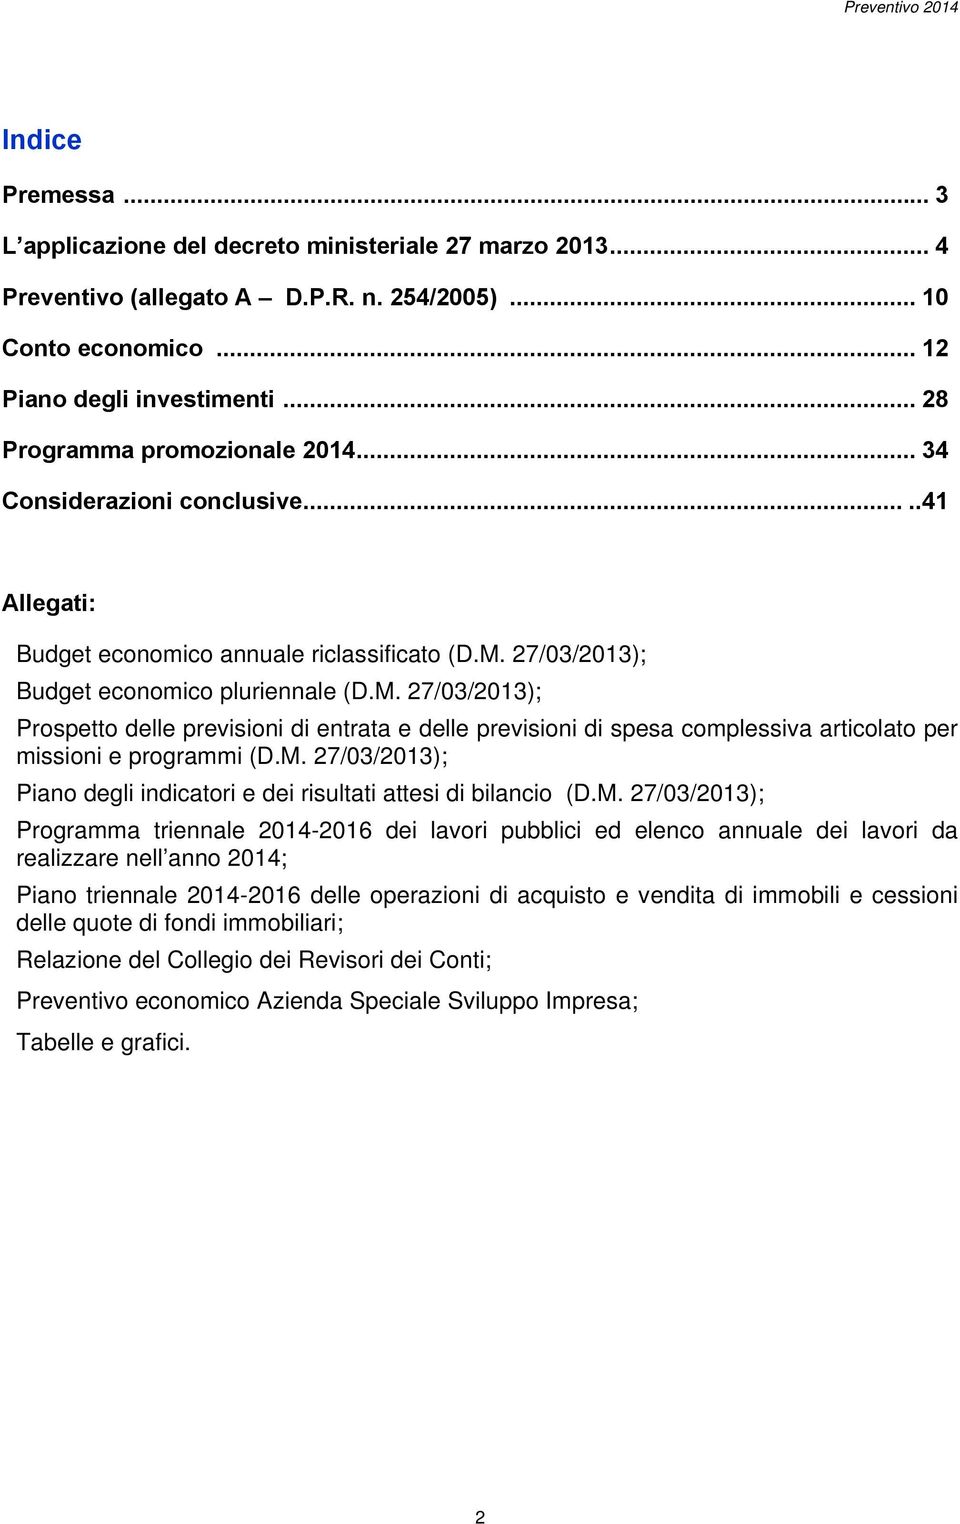 27/03/2013); Budget economico pluriennale (D.M. 27/03/2013); Prospetto delle previsioni di entrata e delle previsioni di spesa complessiva articolato per missioni e programmi (D.M. 27/03/2013); Piano degli indicatori e dei risultati attesi di bilancio (D.